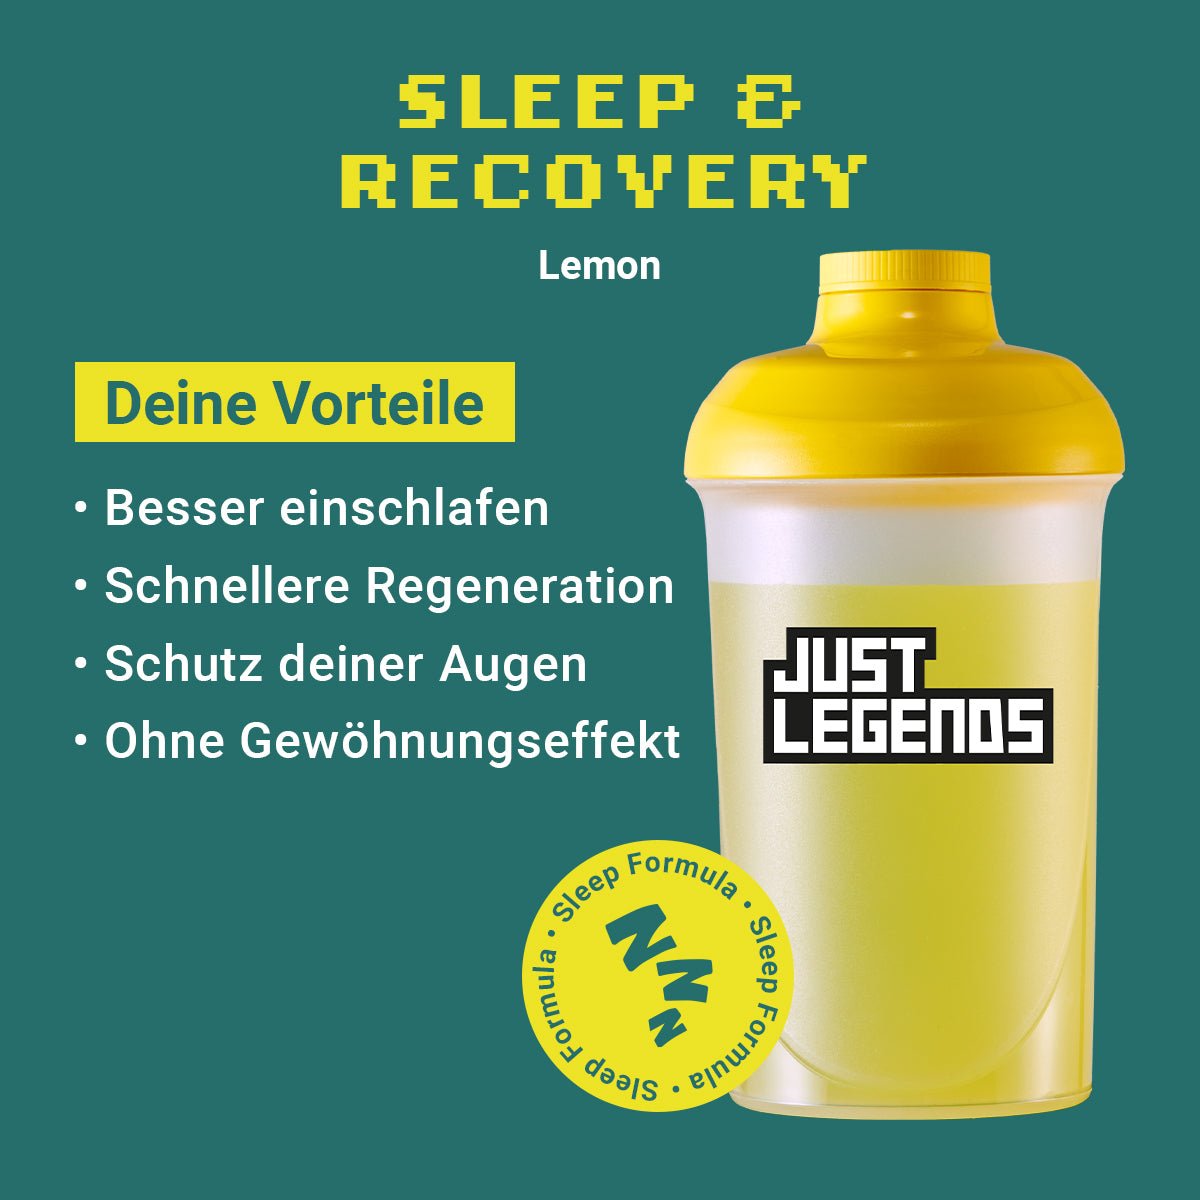 Just Legends Sleep & Recovery Lemon | Funktionaler, veganer Sleep and Recovery auf Pulverbasis ohne Zucker, mit wenig Kalorien, vielen Vitaminen und natürlichen Aromen.